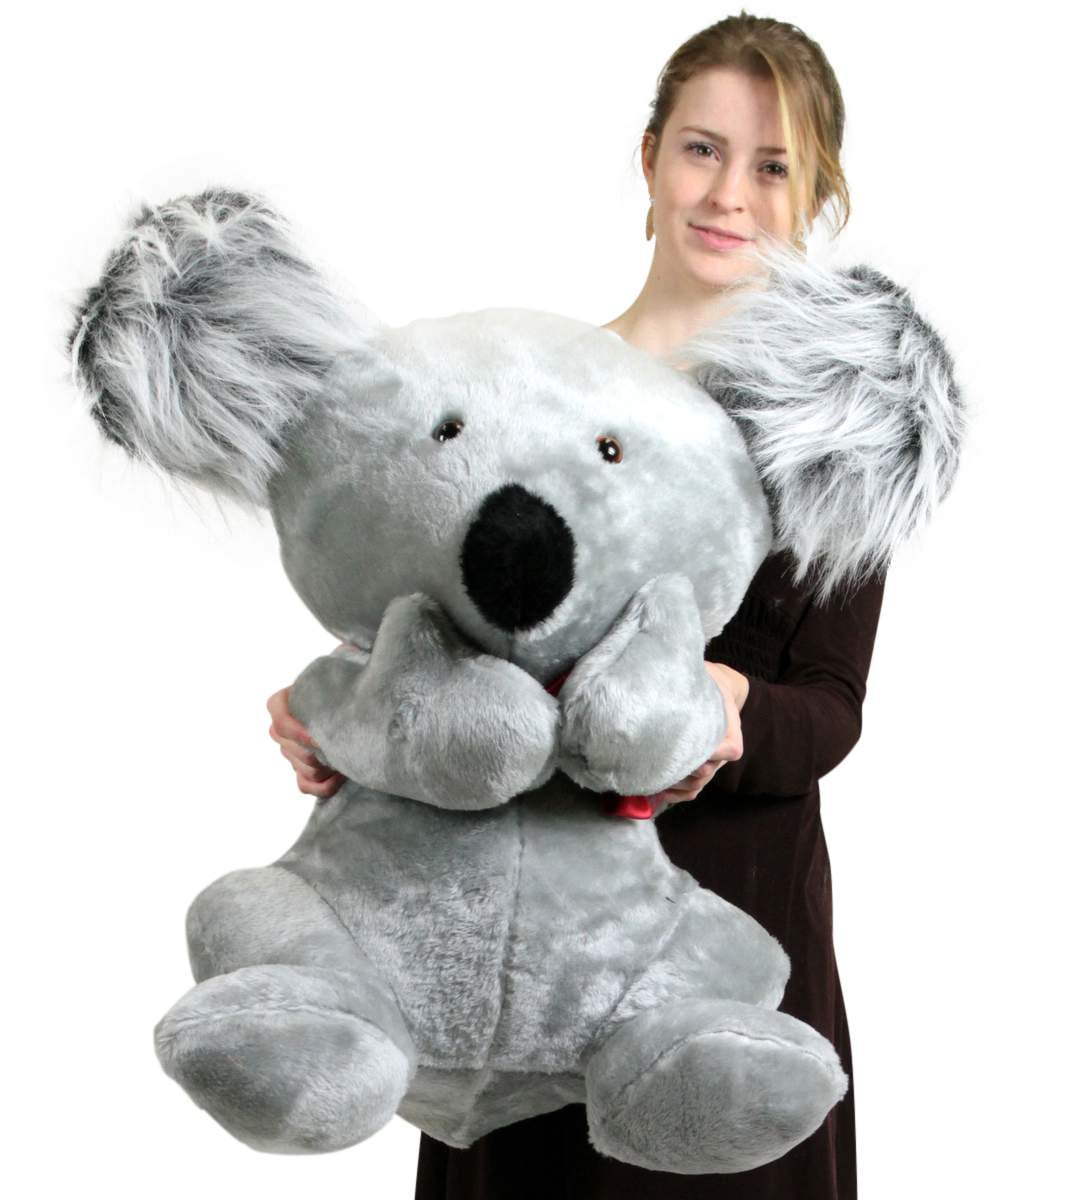 giant koala stuffed animal walmart